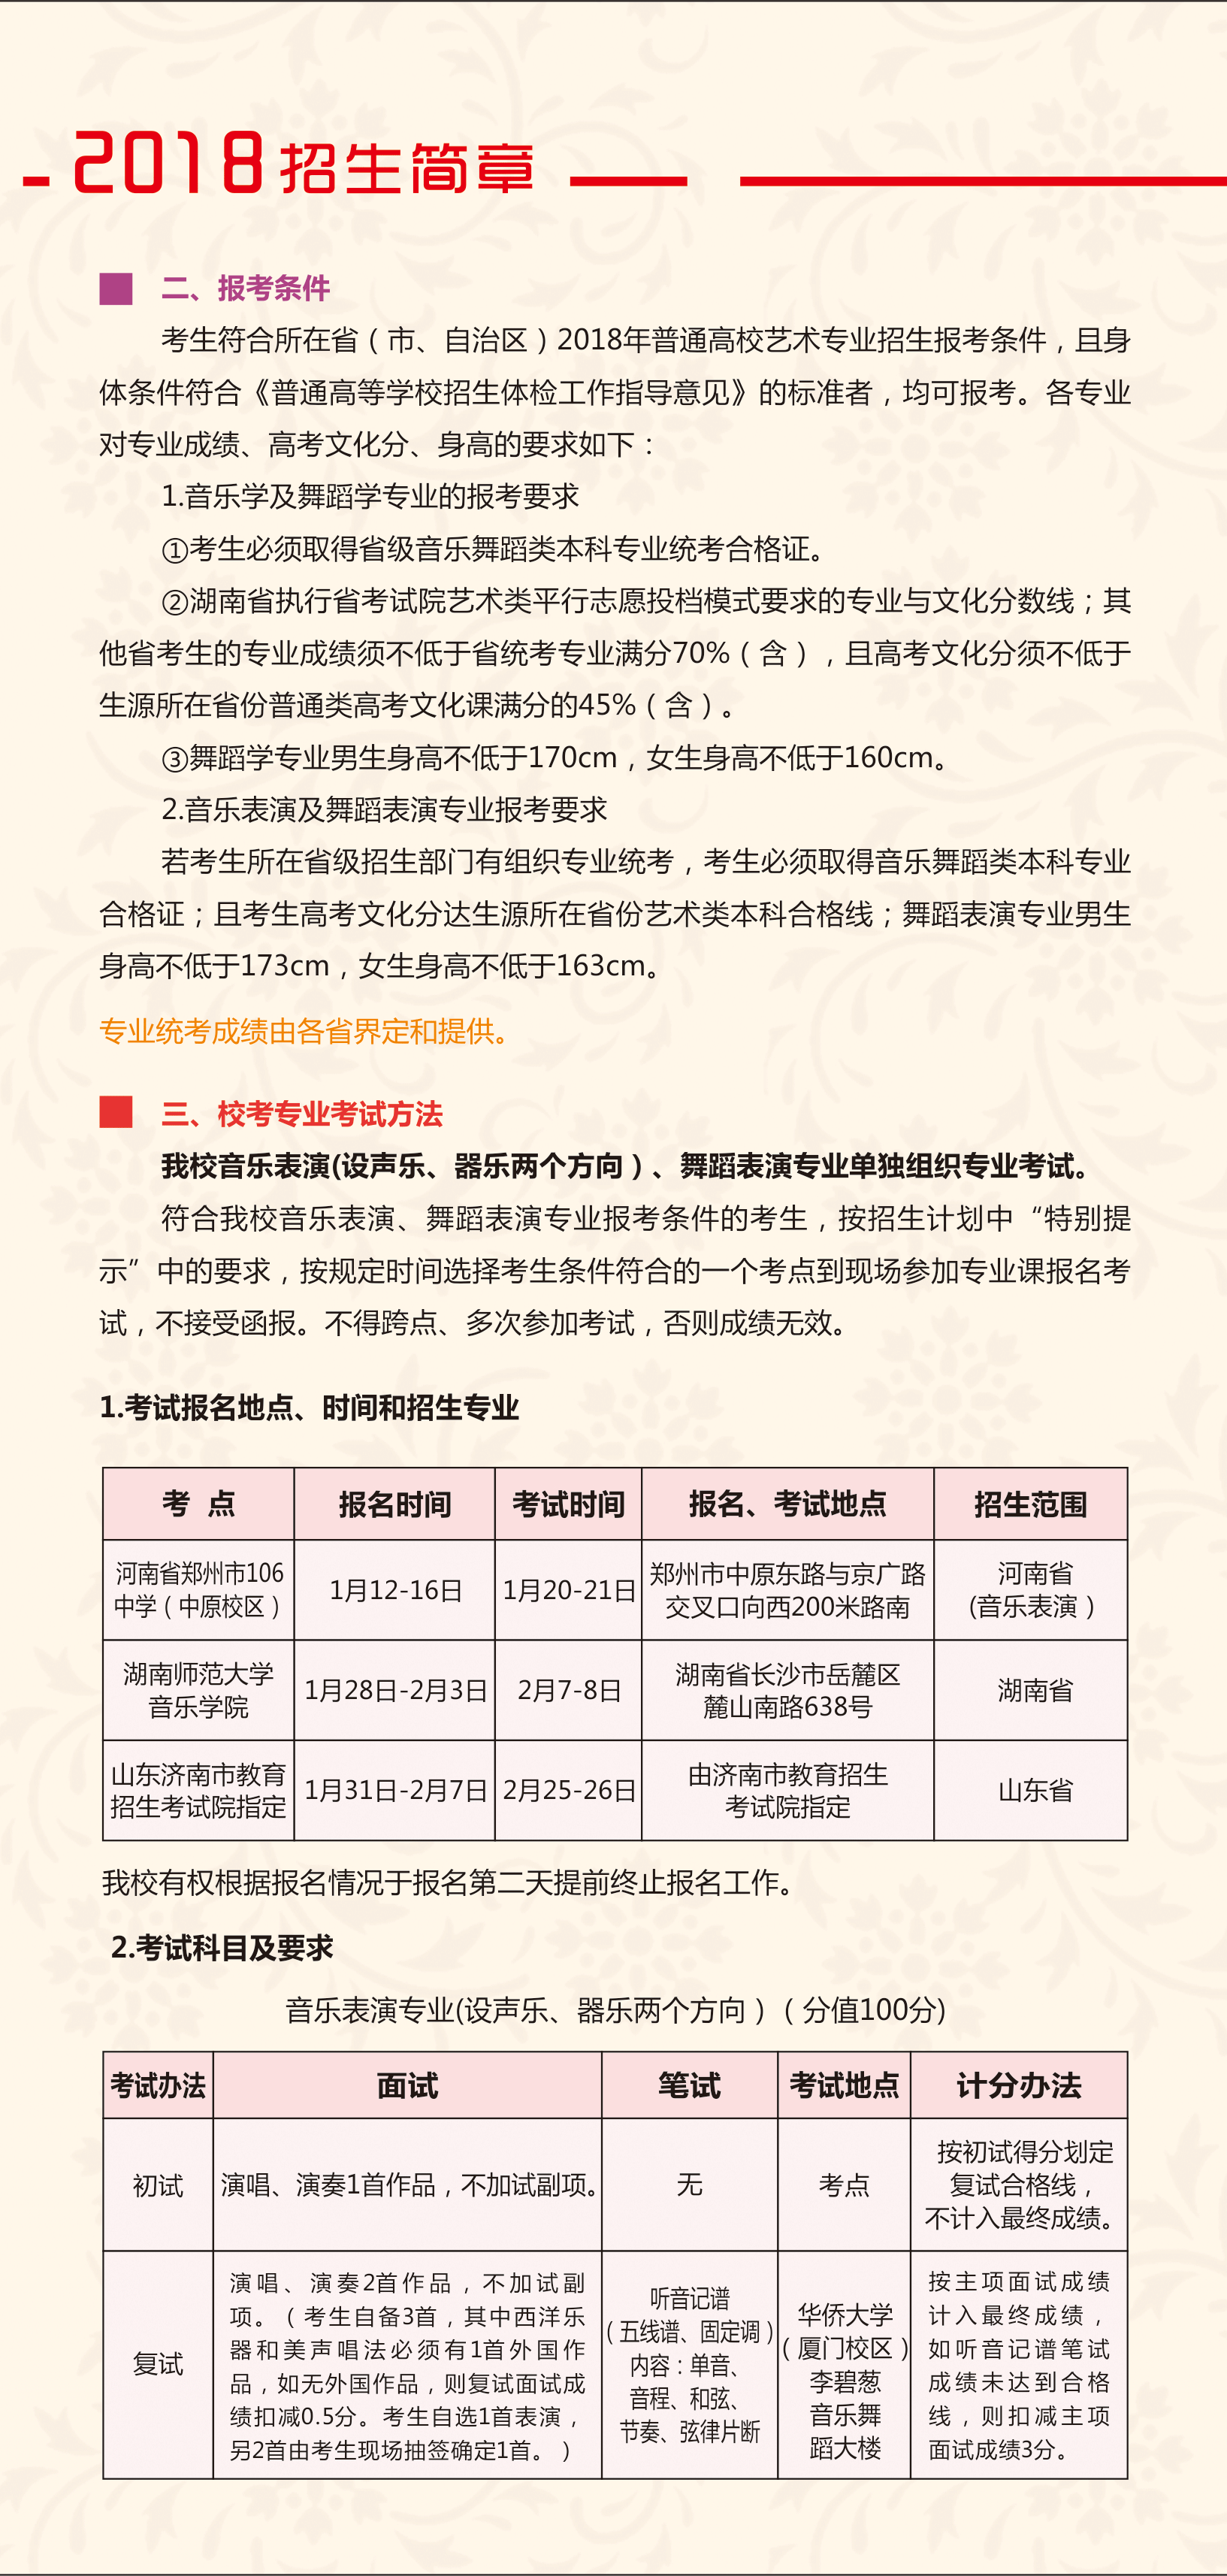 2018年华侨大学音乐舞蹈学院招生简章丨18校考